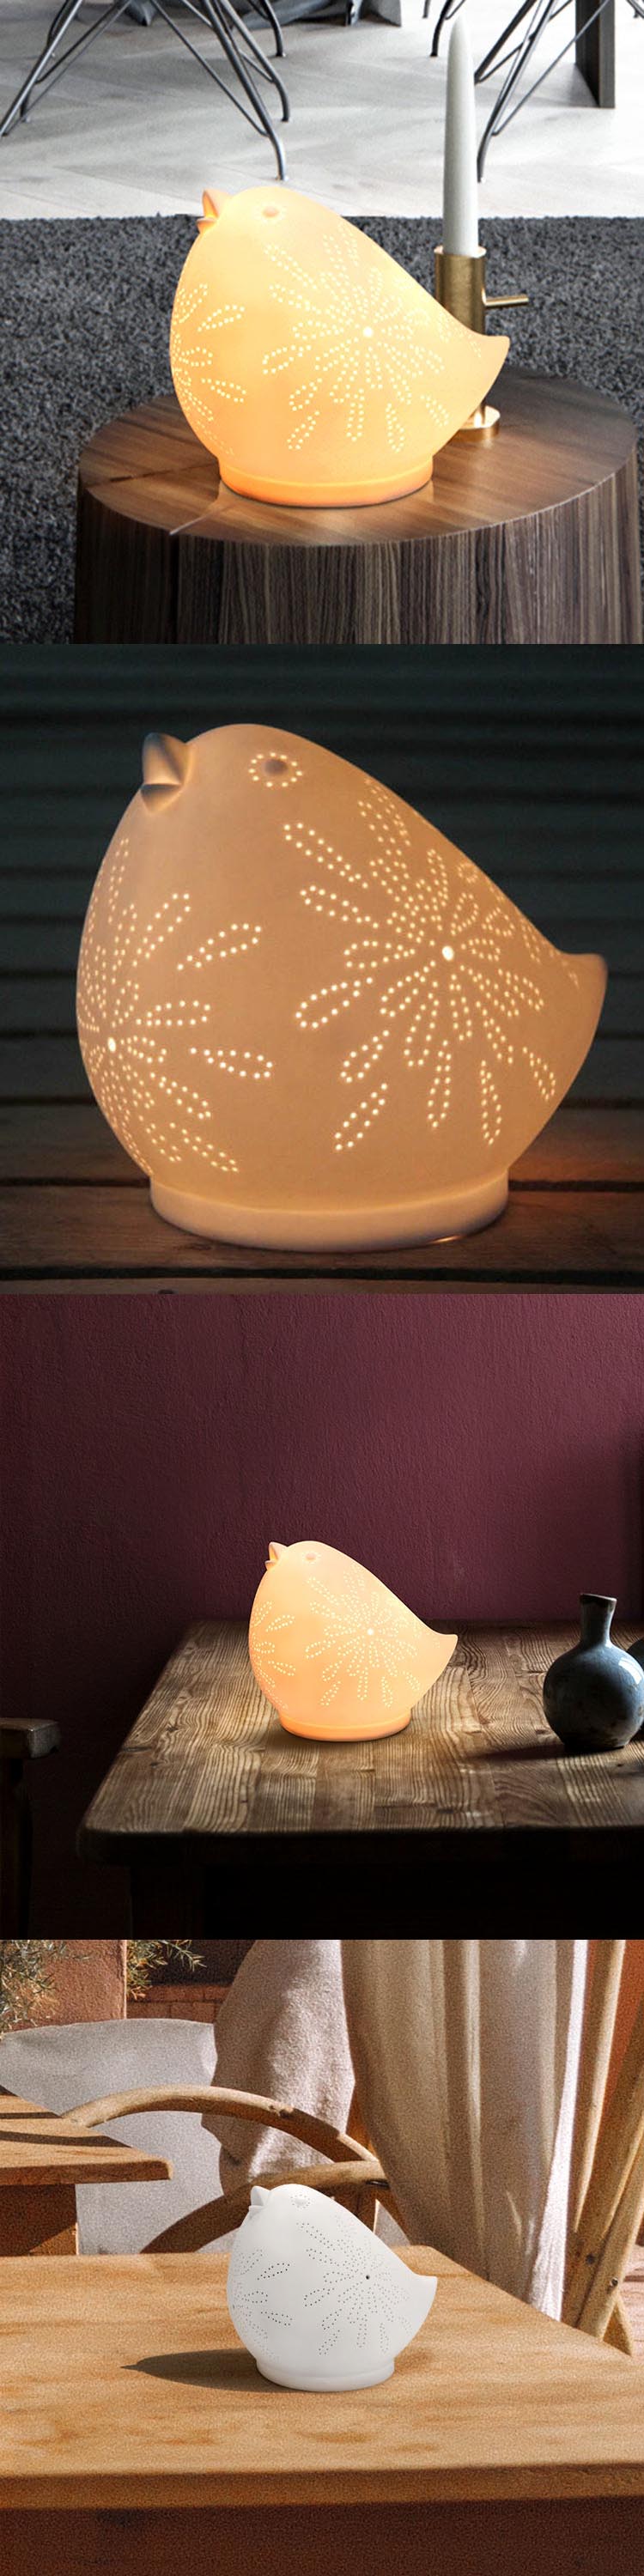 Home decorative hen shape light designer lovely chick shape kids ceramic table lamp animal night table lamp